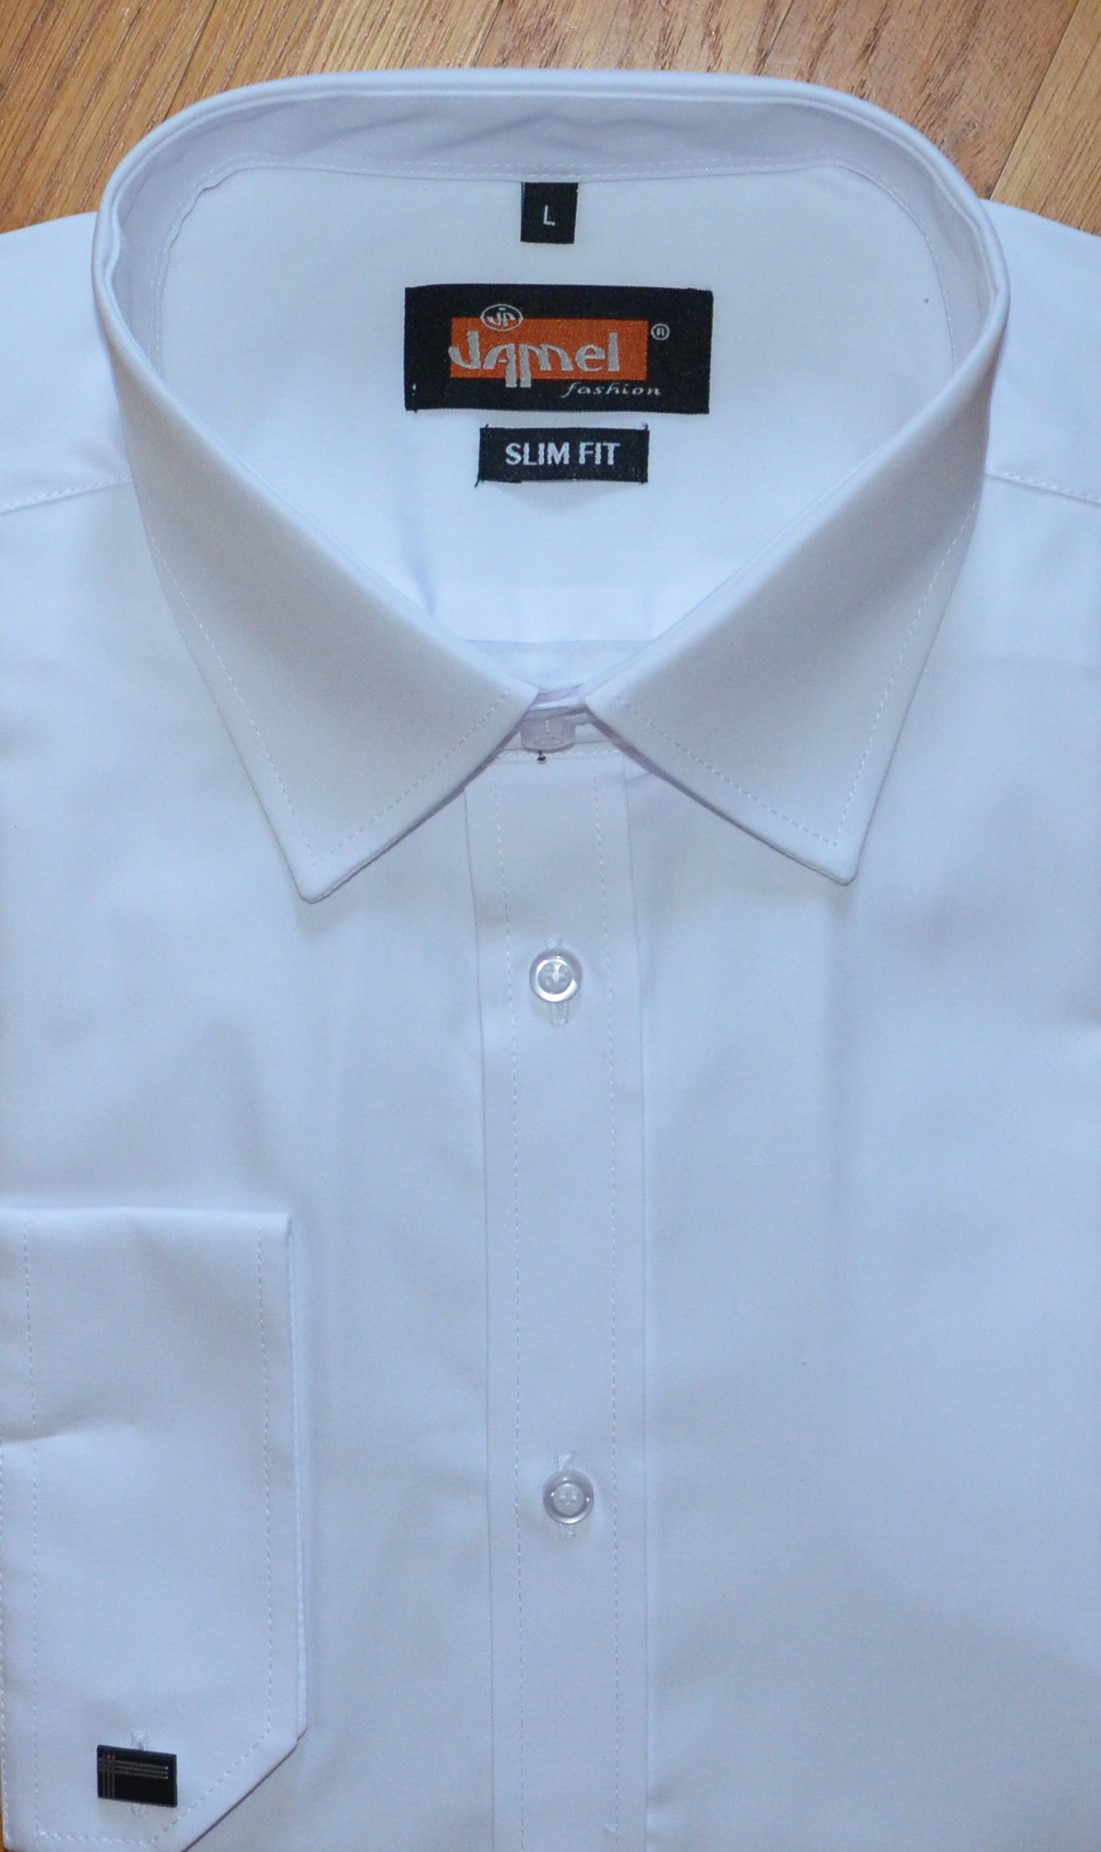 Pánská košile dlouhý rukáv Jamel Fashion 570 001/20 SLIM FIT Bílá manžetový knoflík Velikost: 45-46 XXL